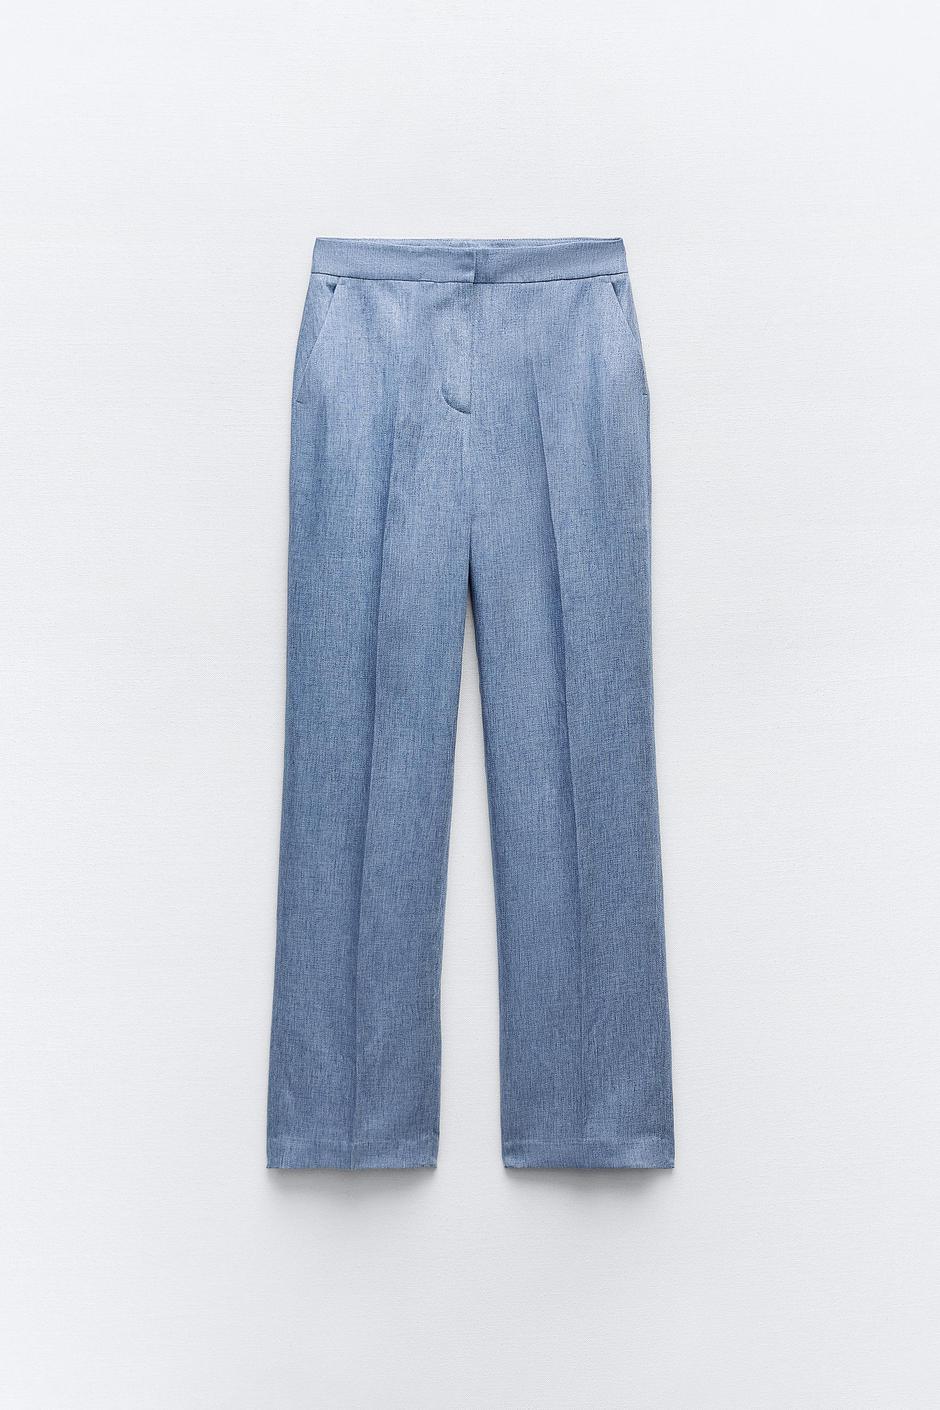 Foto: Zara, plave hlače od svjetlucave tkanine (35,95 eura) | Autor: 